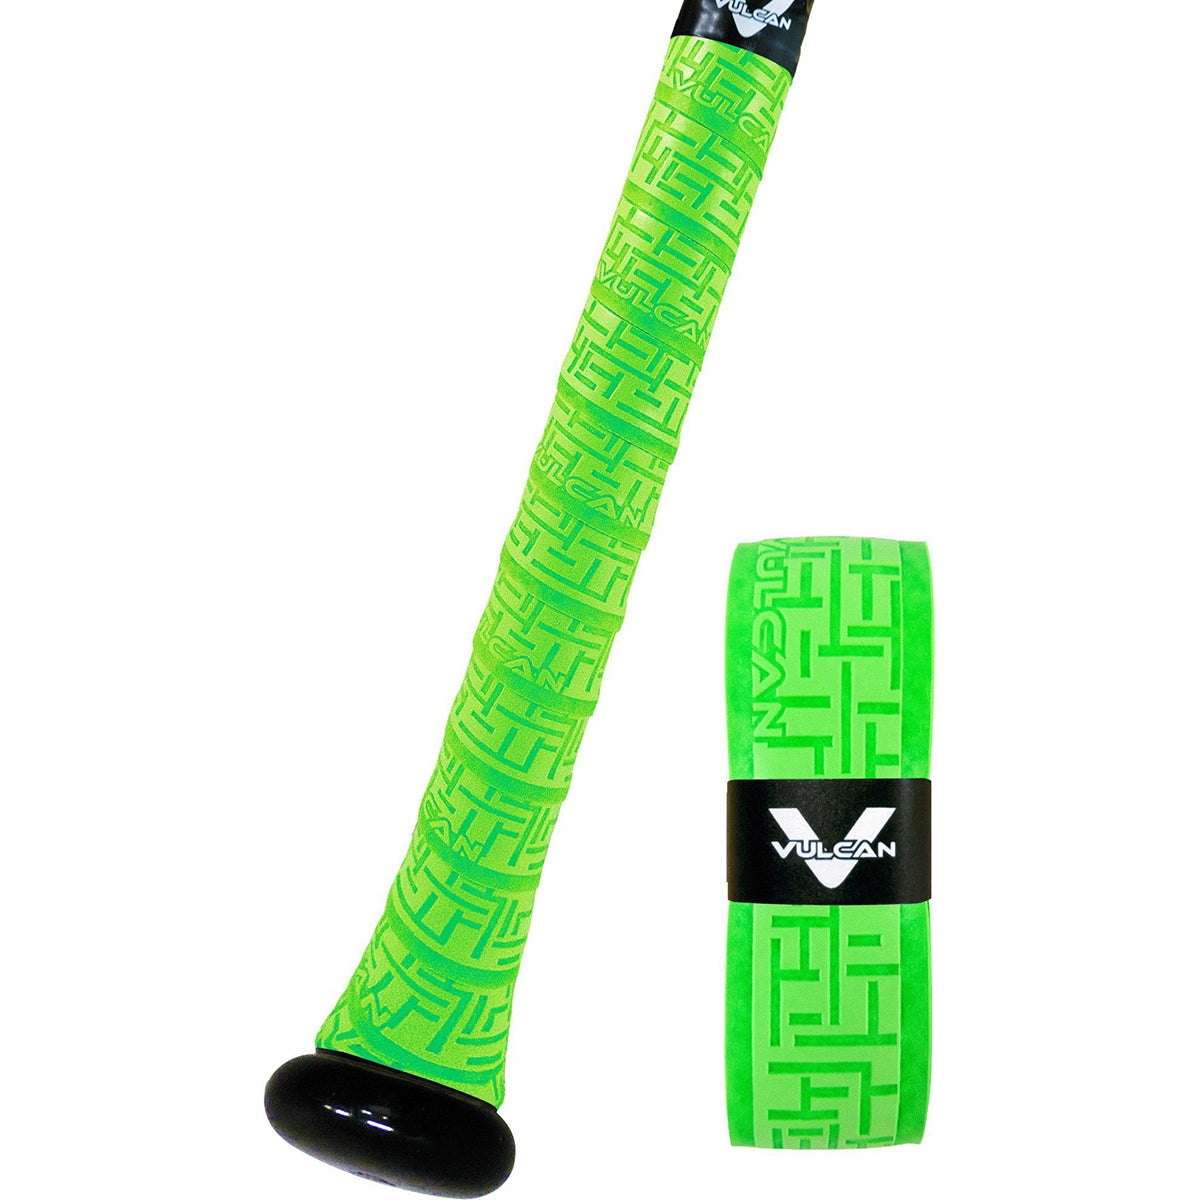 Vulcan Solid Series 0.5mm Ultralight Advanced Polymer Bat Grip Tape Wrap Vulcan